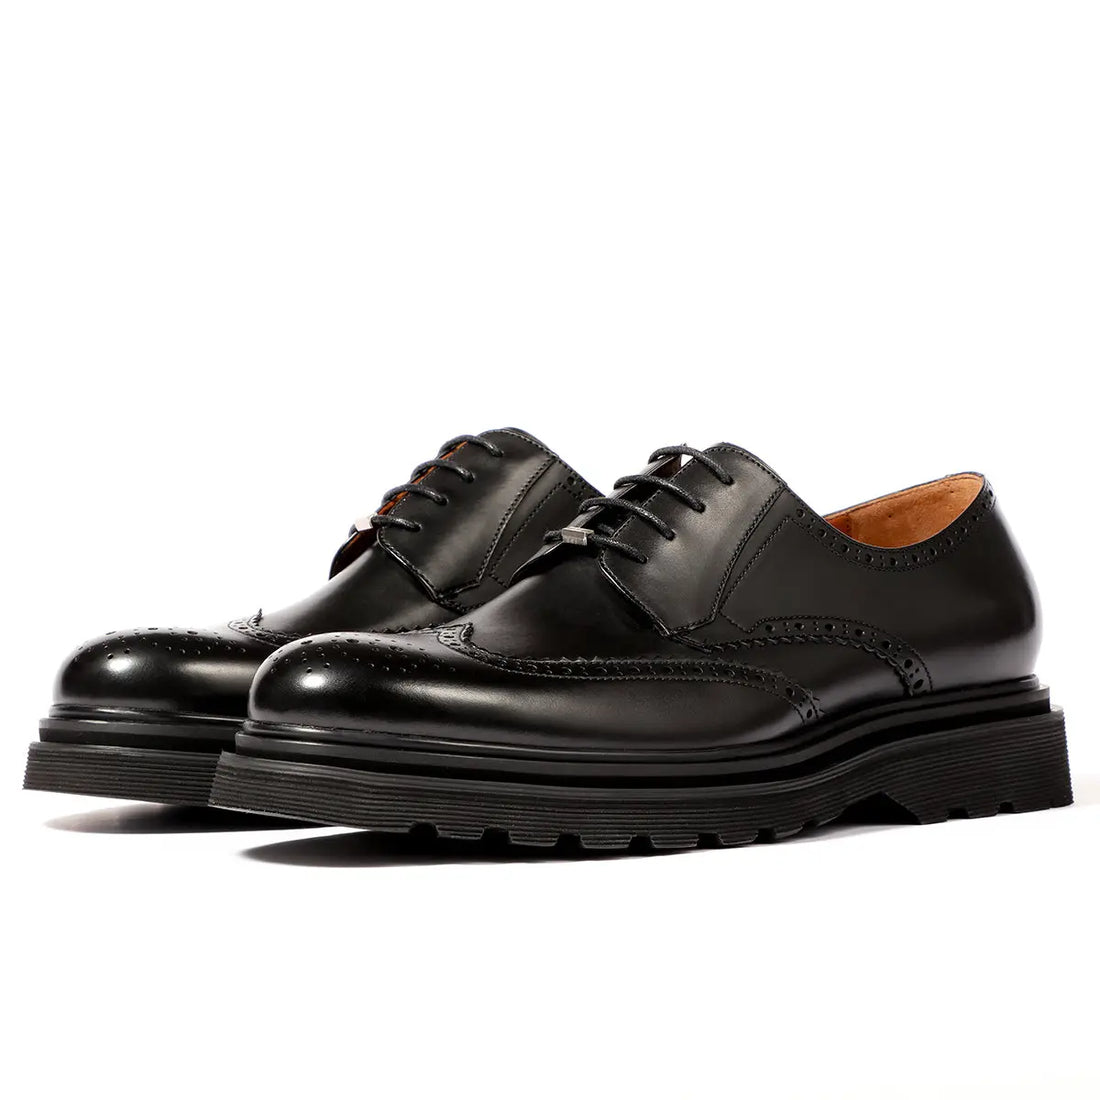 Men's black lace-up platform brogue derby shoes 90109 Leizilei